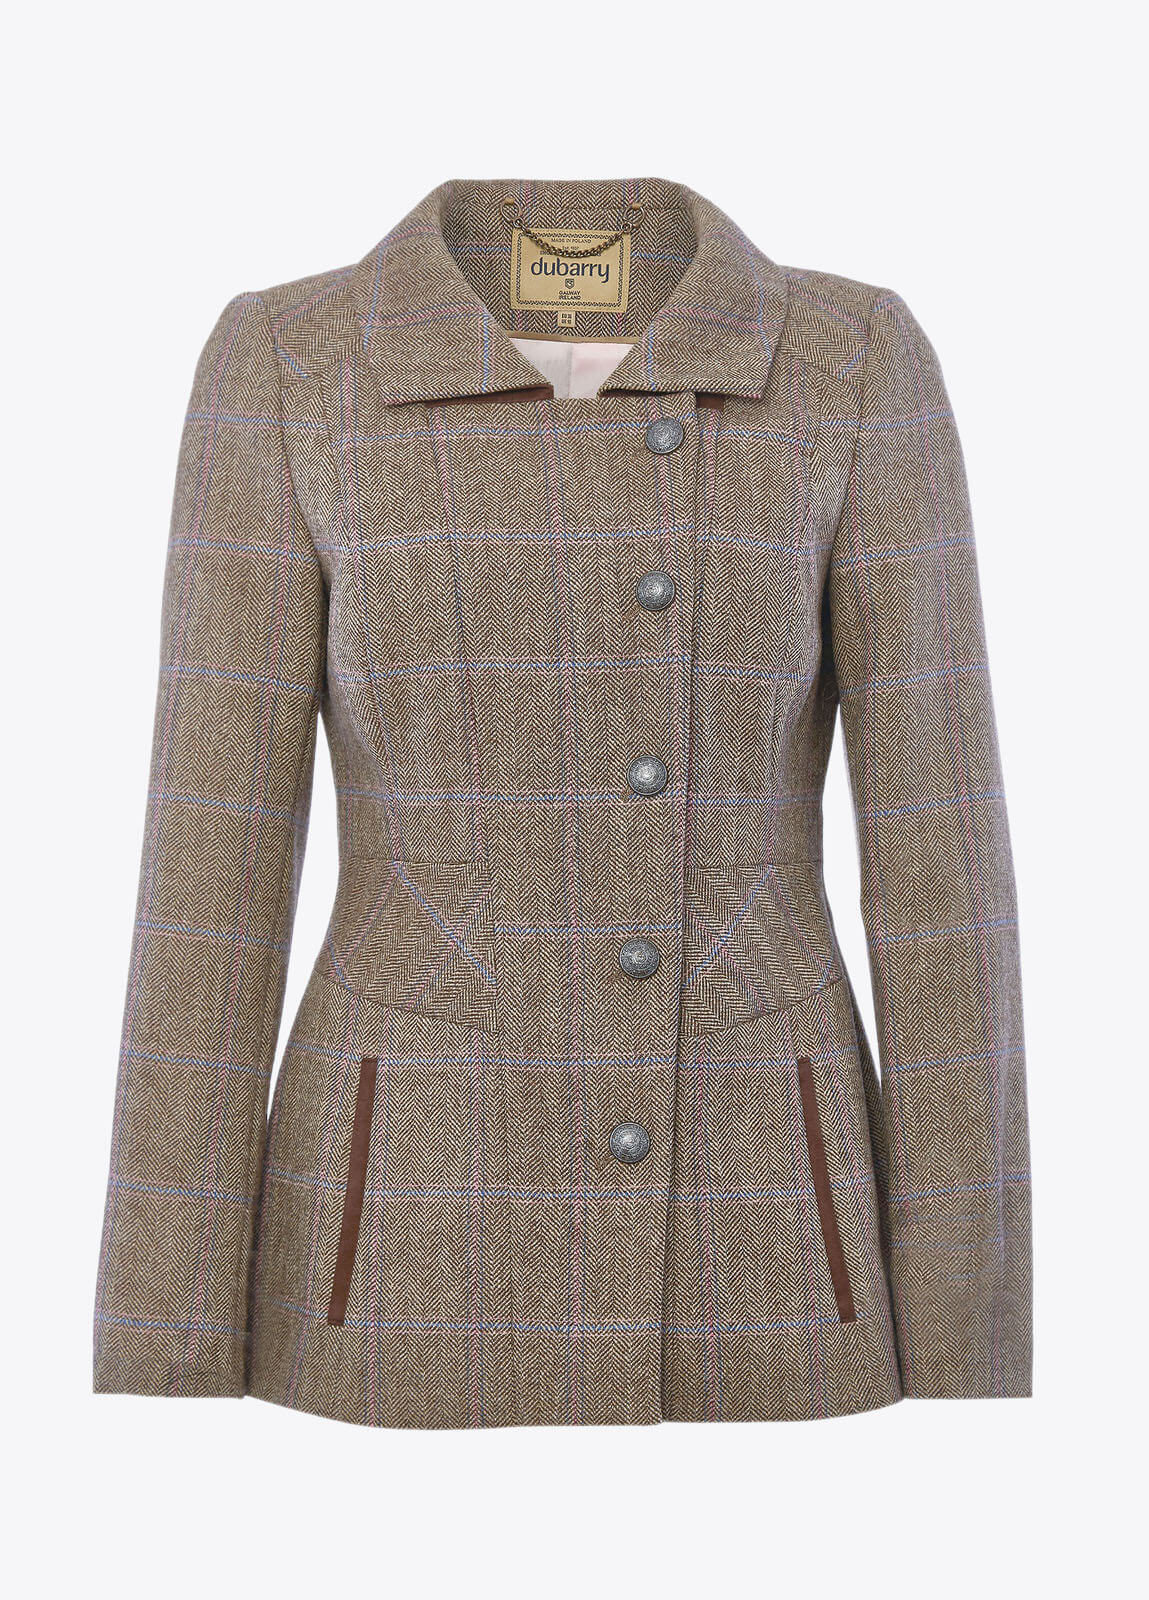 Moorland Tweed Jacket - Woodrose